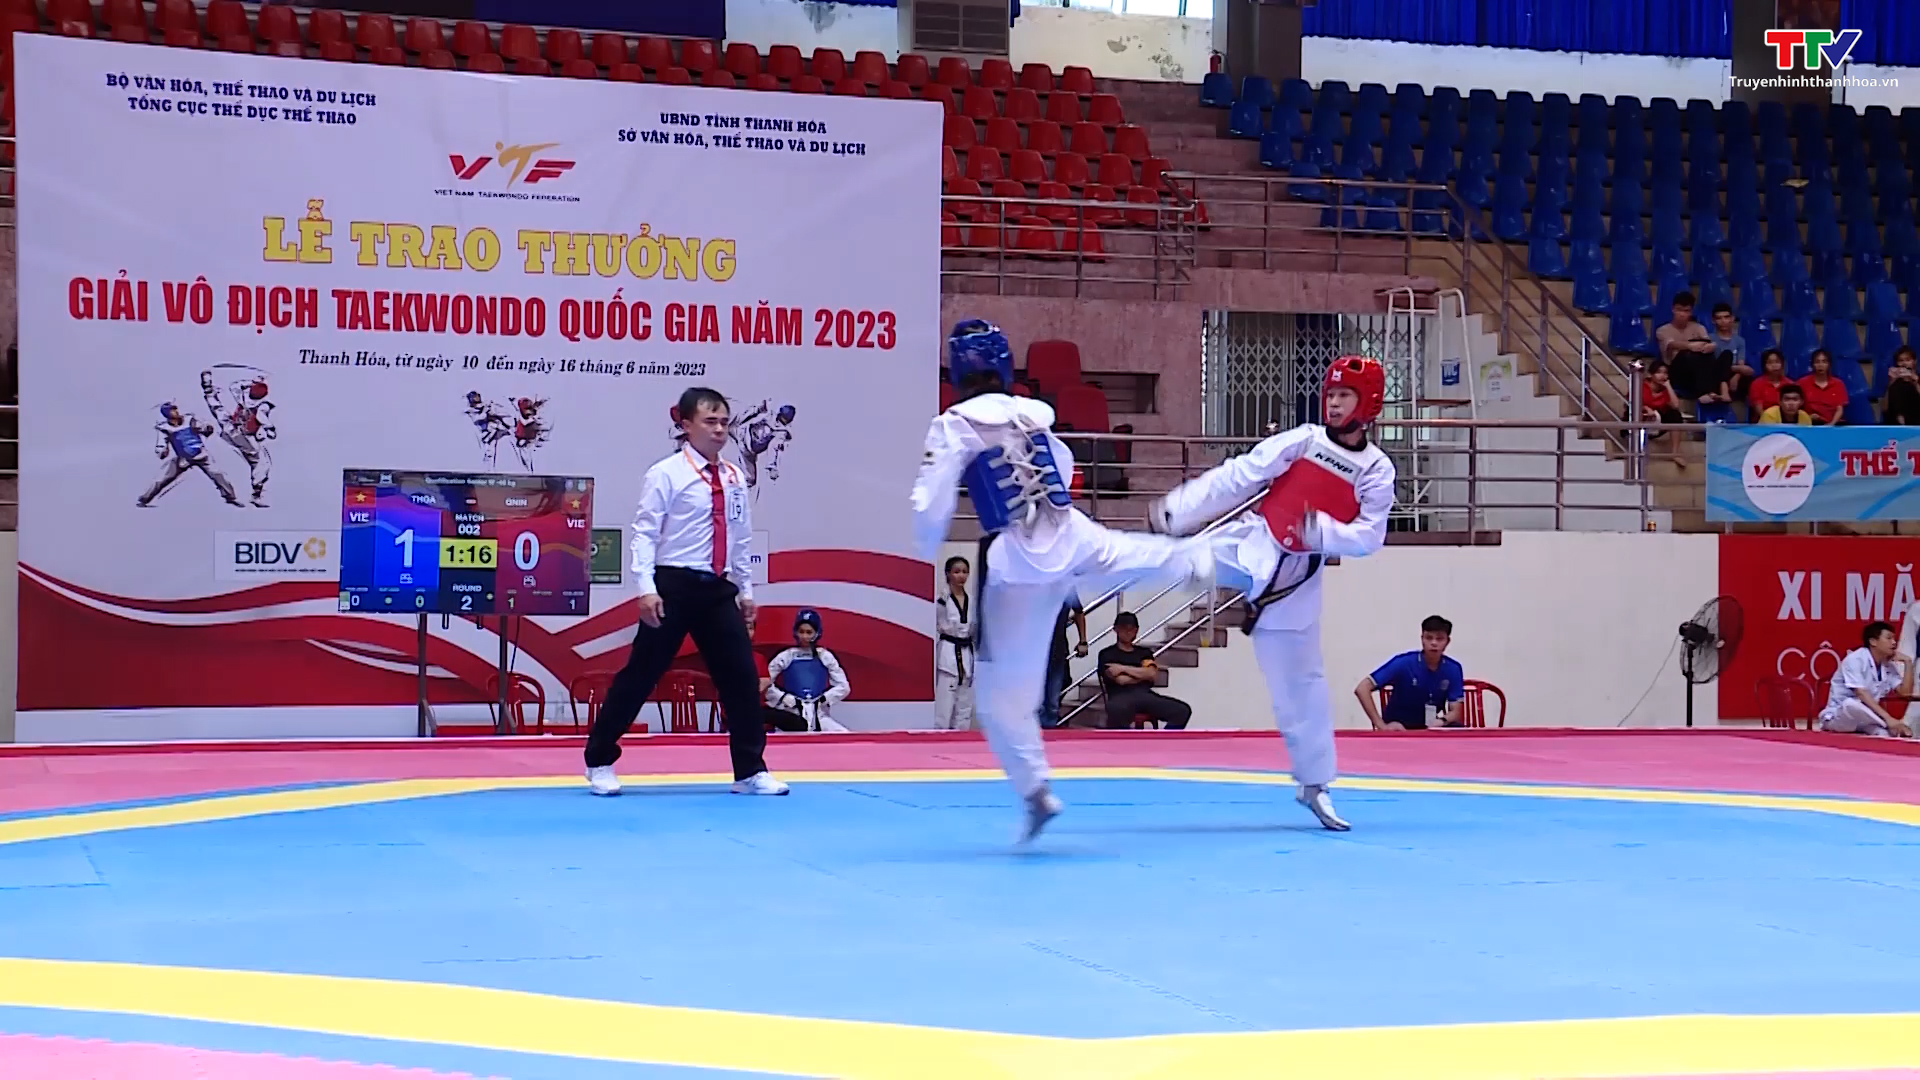 Khai mạc giải vô địch Taekwondo quốc gia năm 2023 tại Thanh Hóa - Ảnh 3.